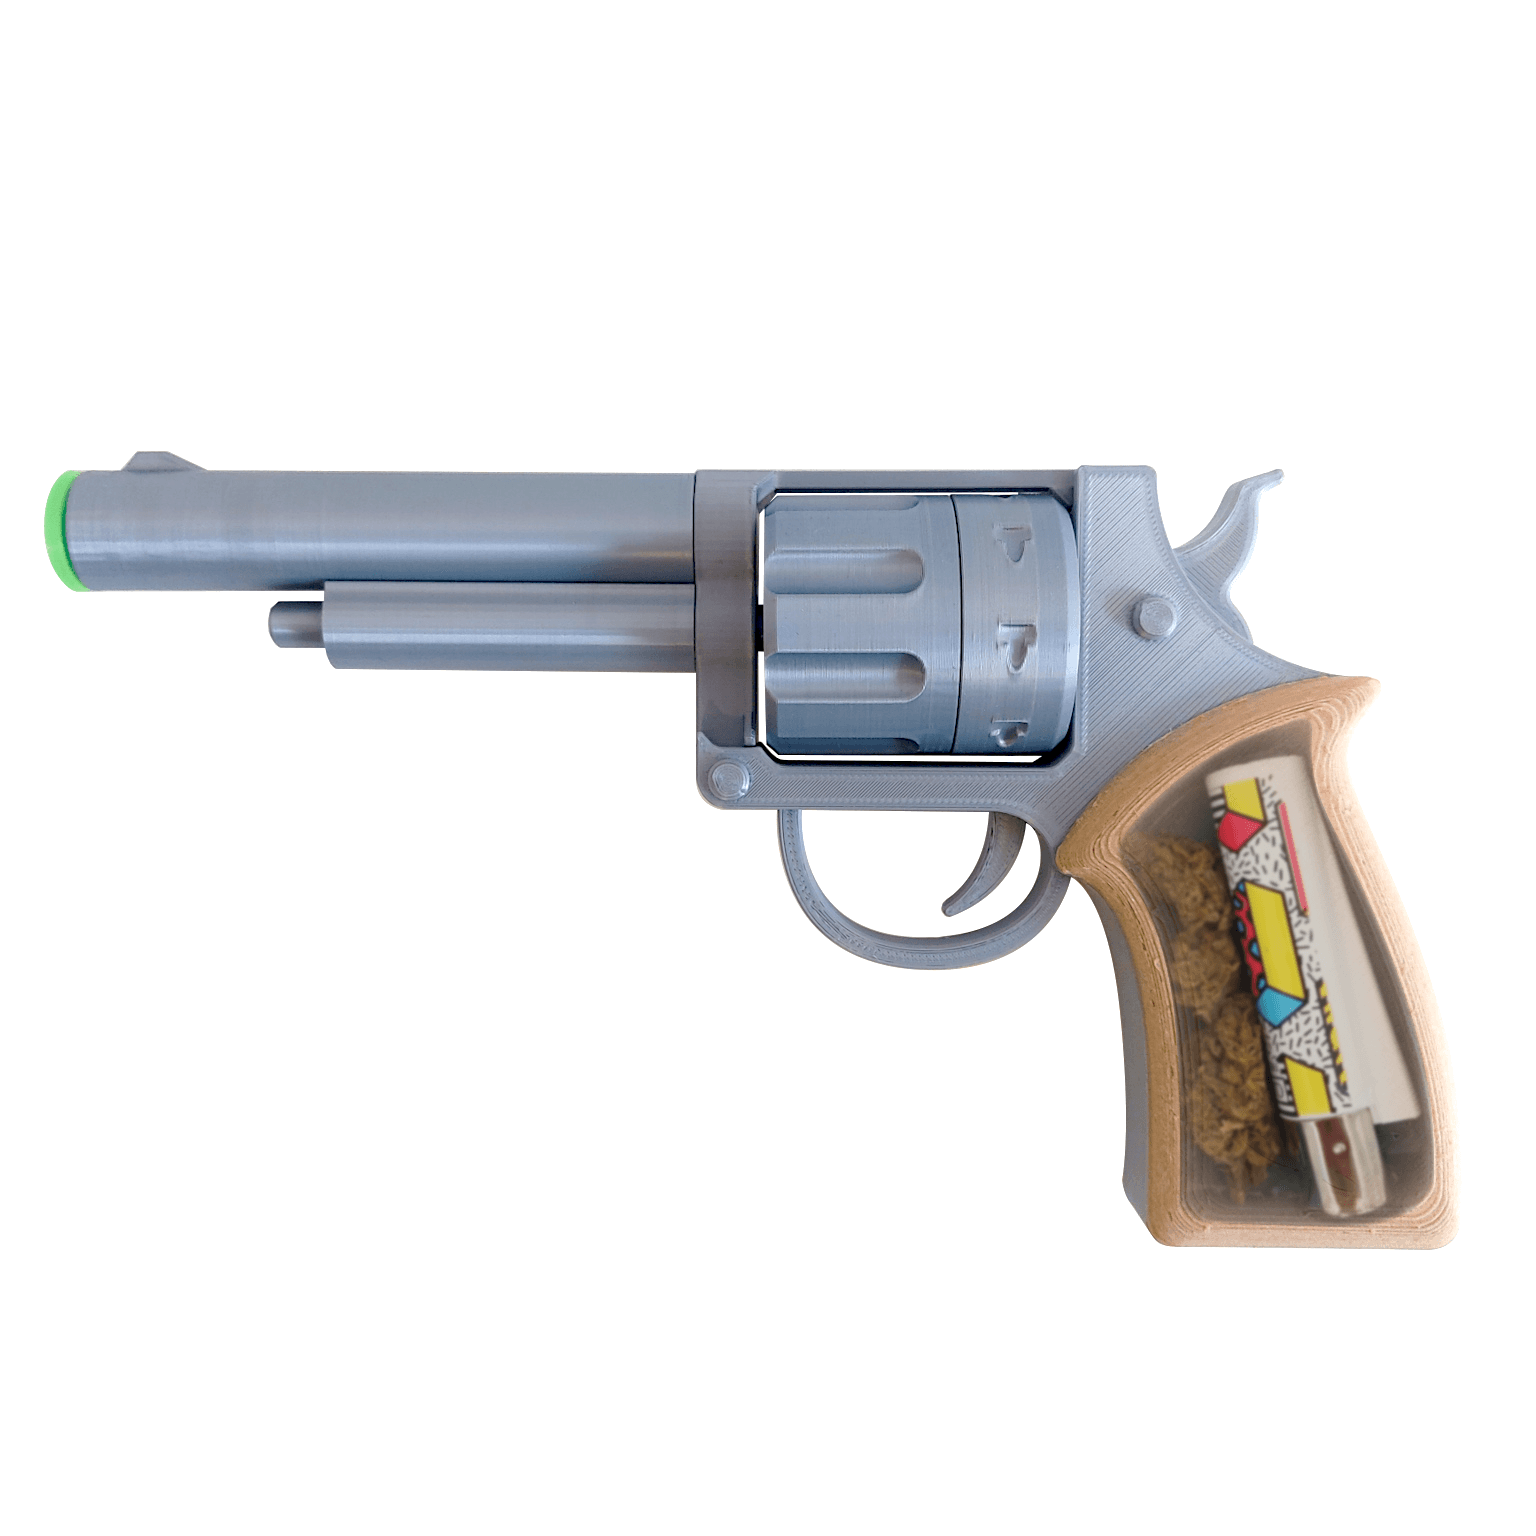 Smokin' Gun - Weed Kit 3d model